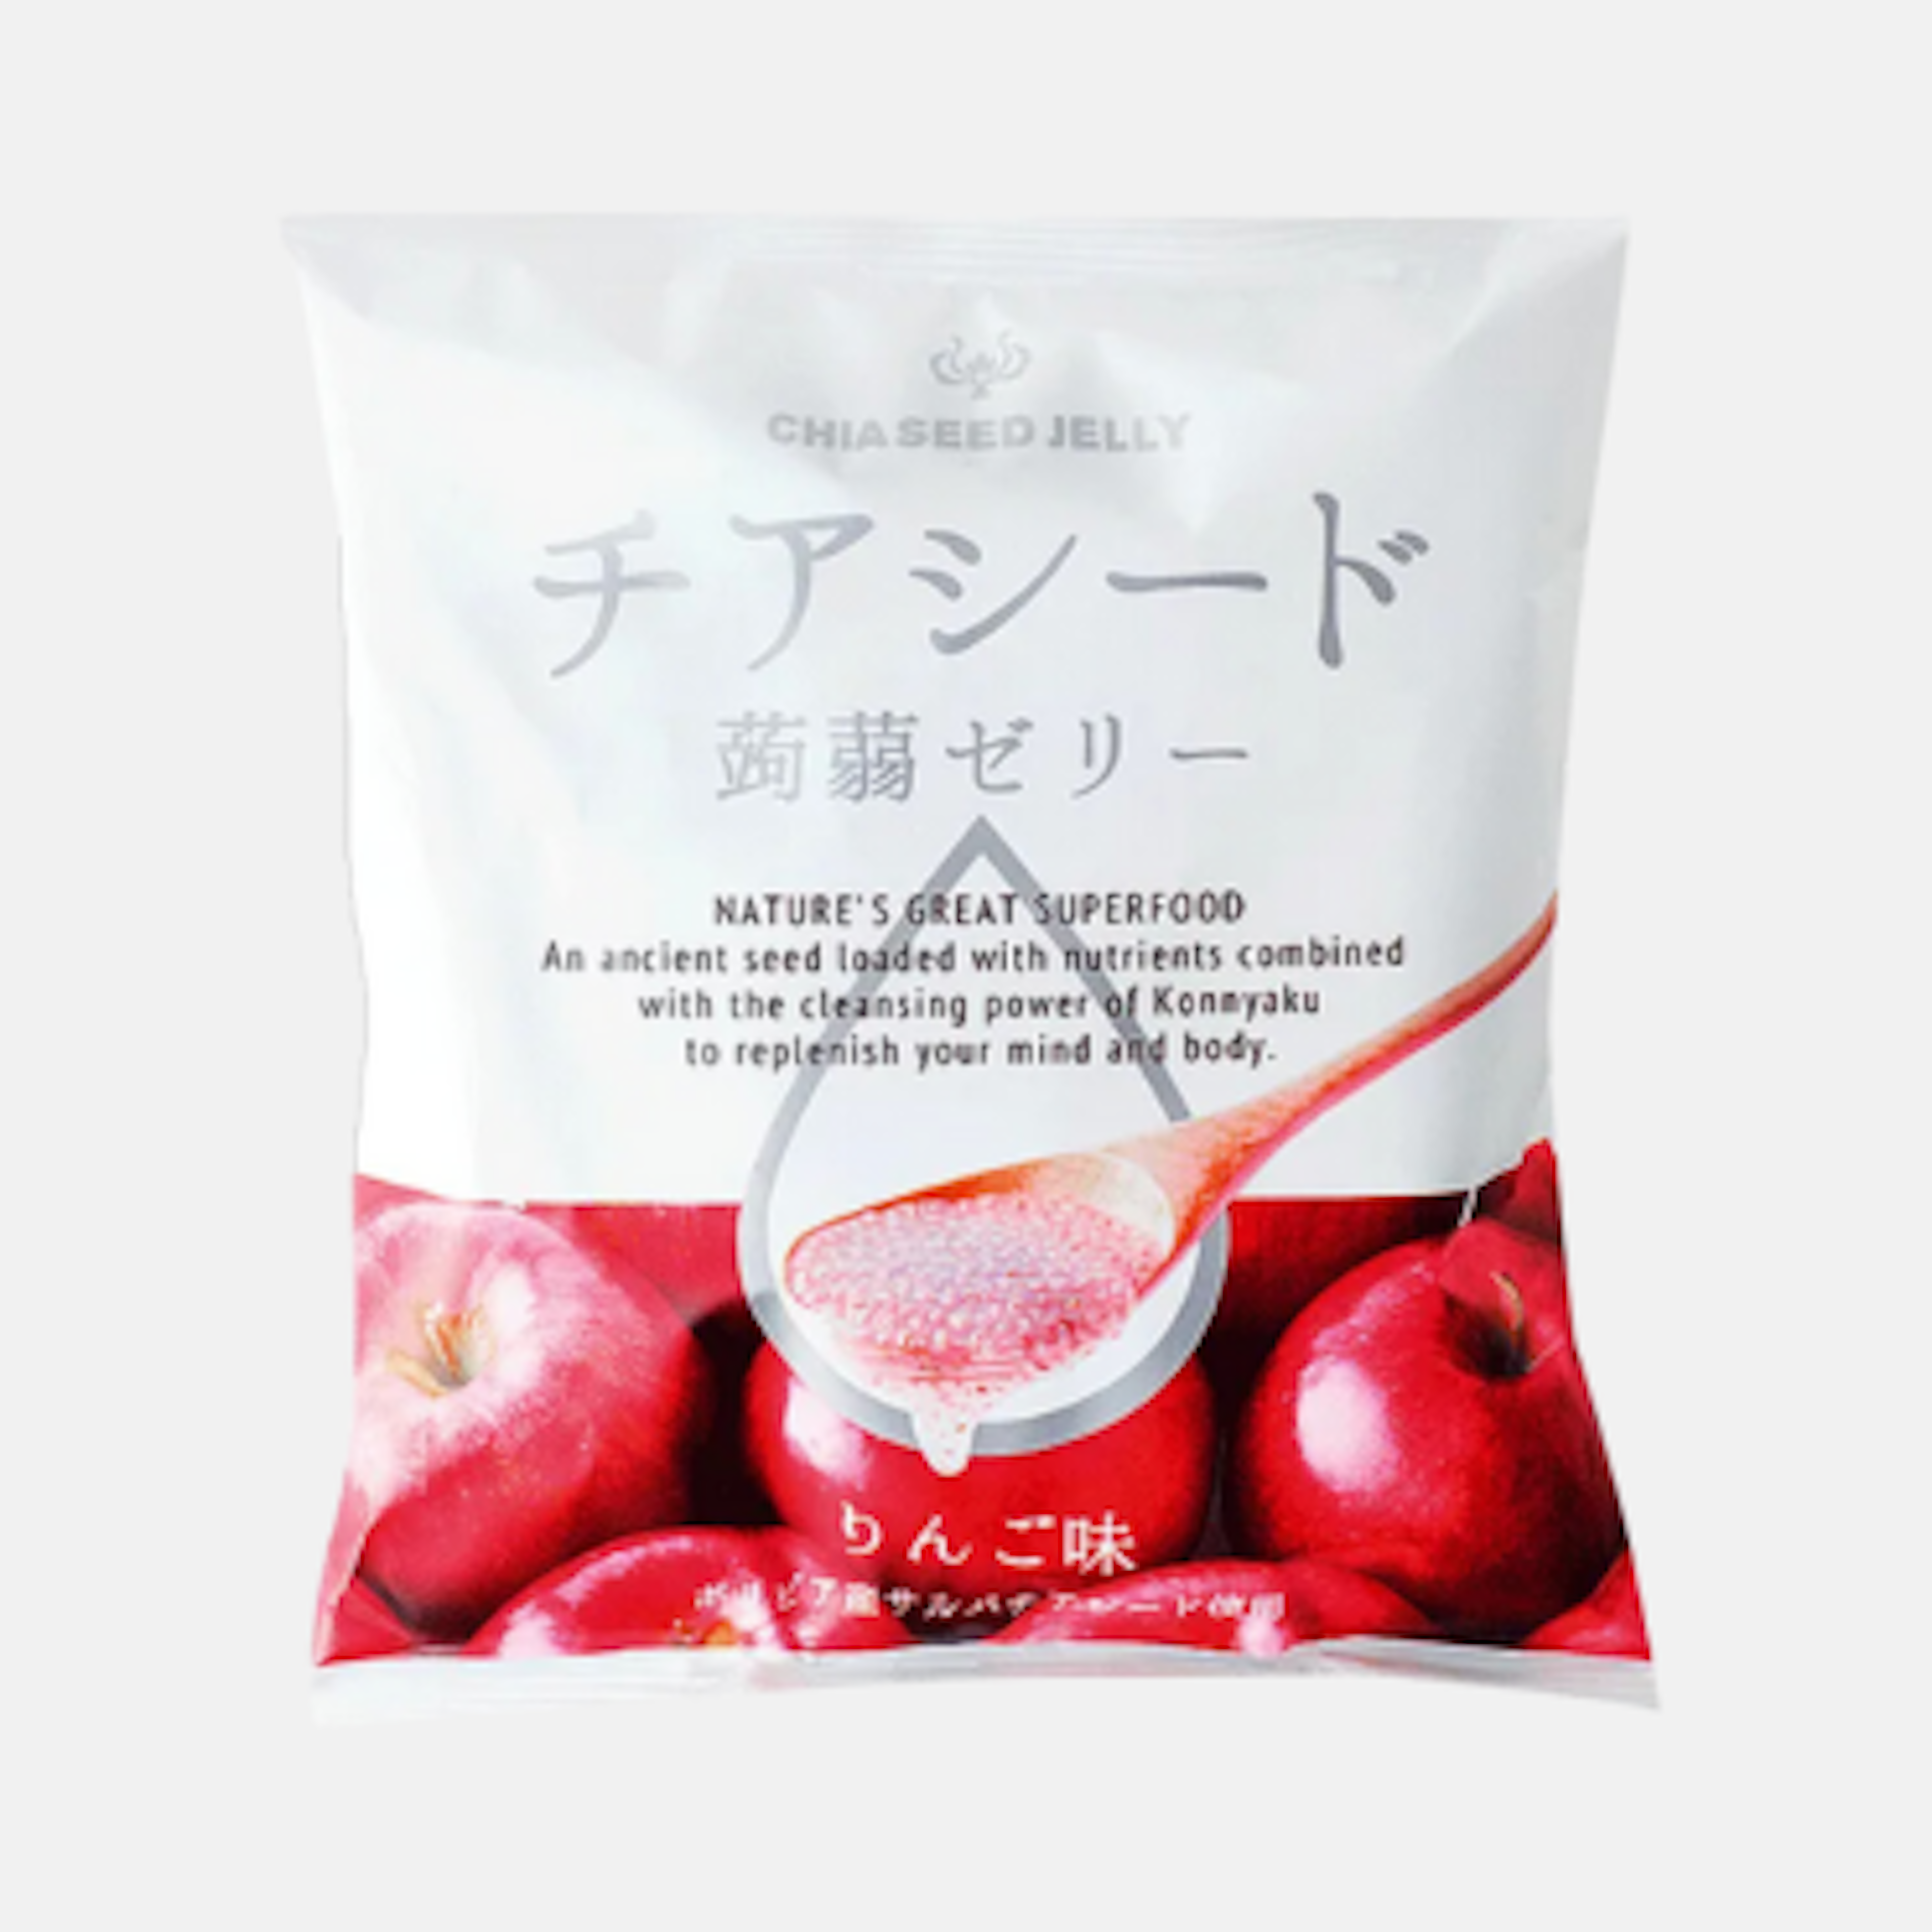 Chia Samen sorgen für den besonderen Biss - Wakashou Chia Seed Jelly Apple 165g